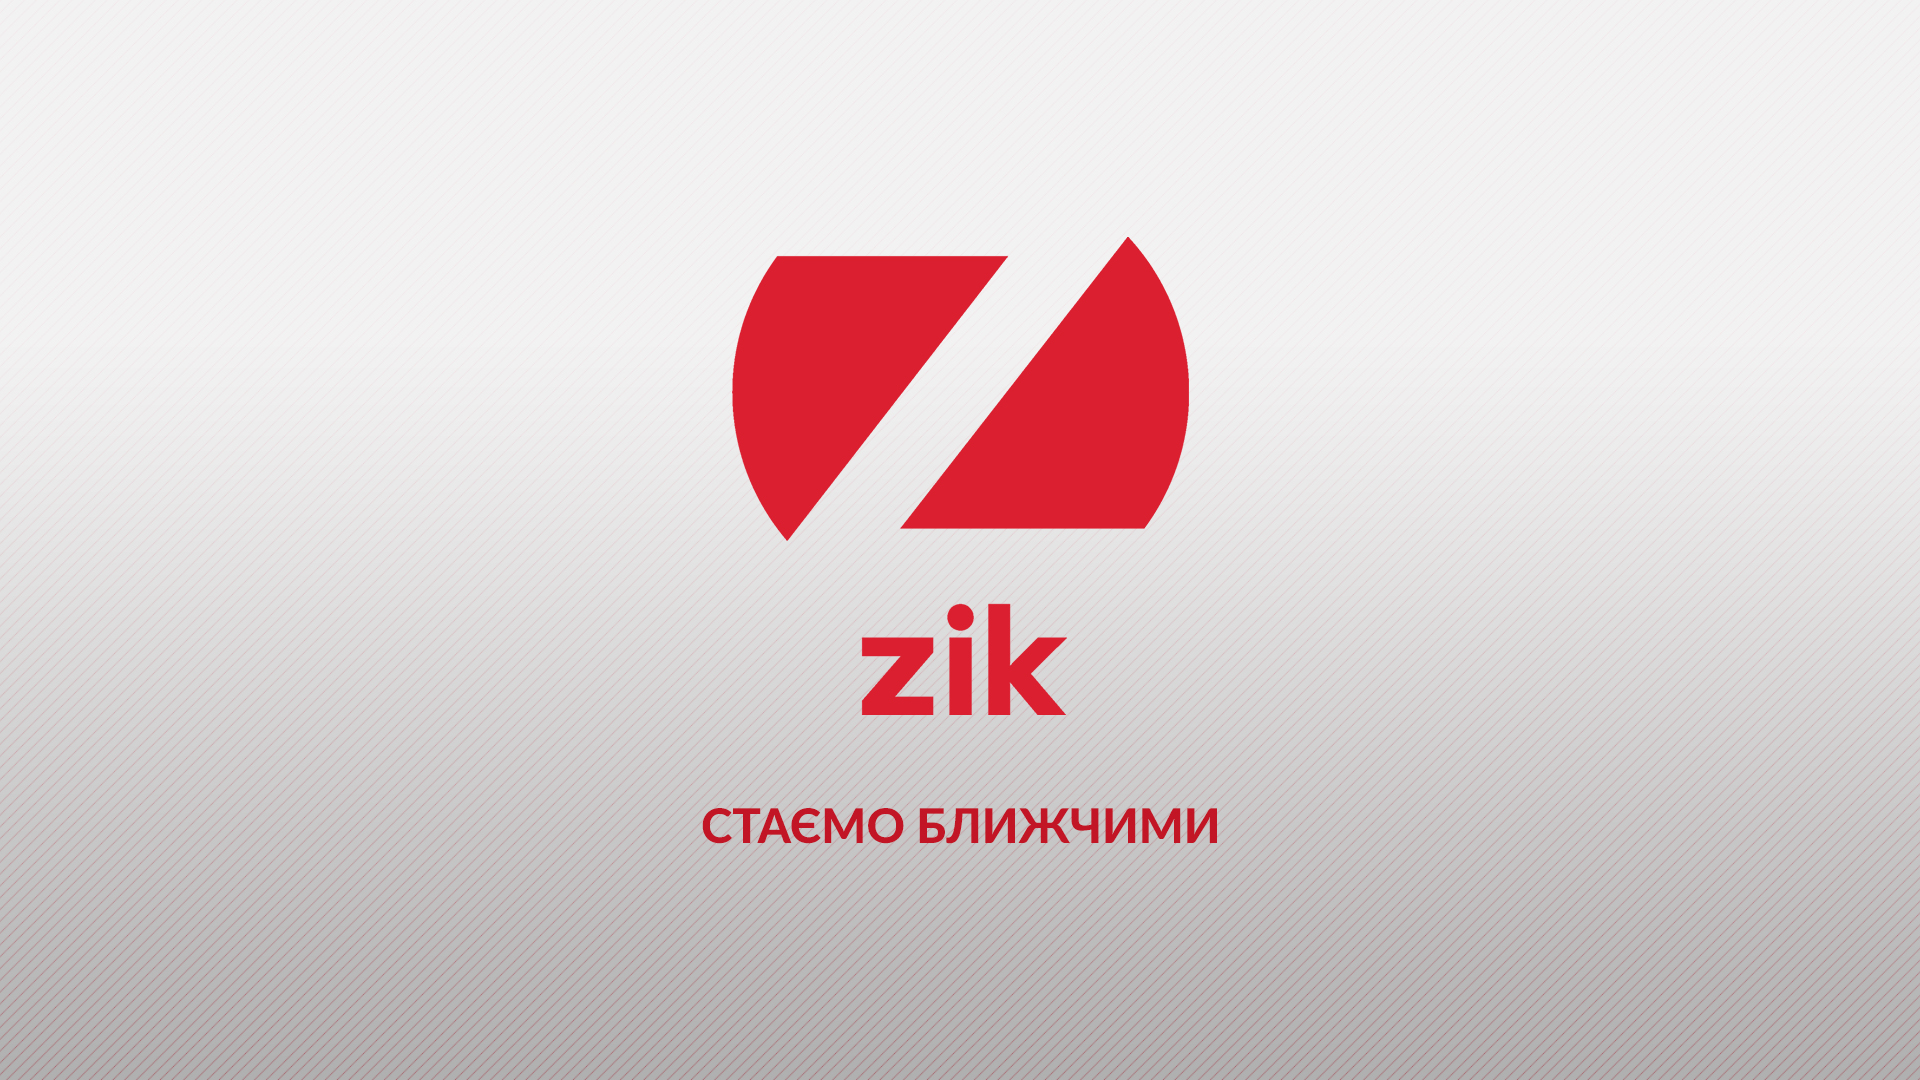 Гендиректоркою телеканалу ZIK стала Наталія Вітрук, її заступником – Данило Нікуленко